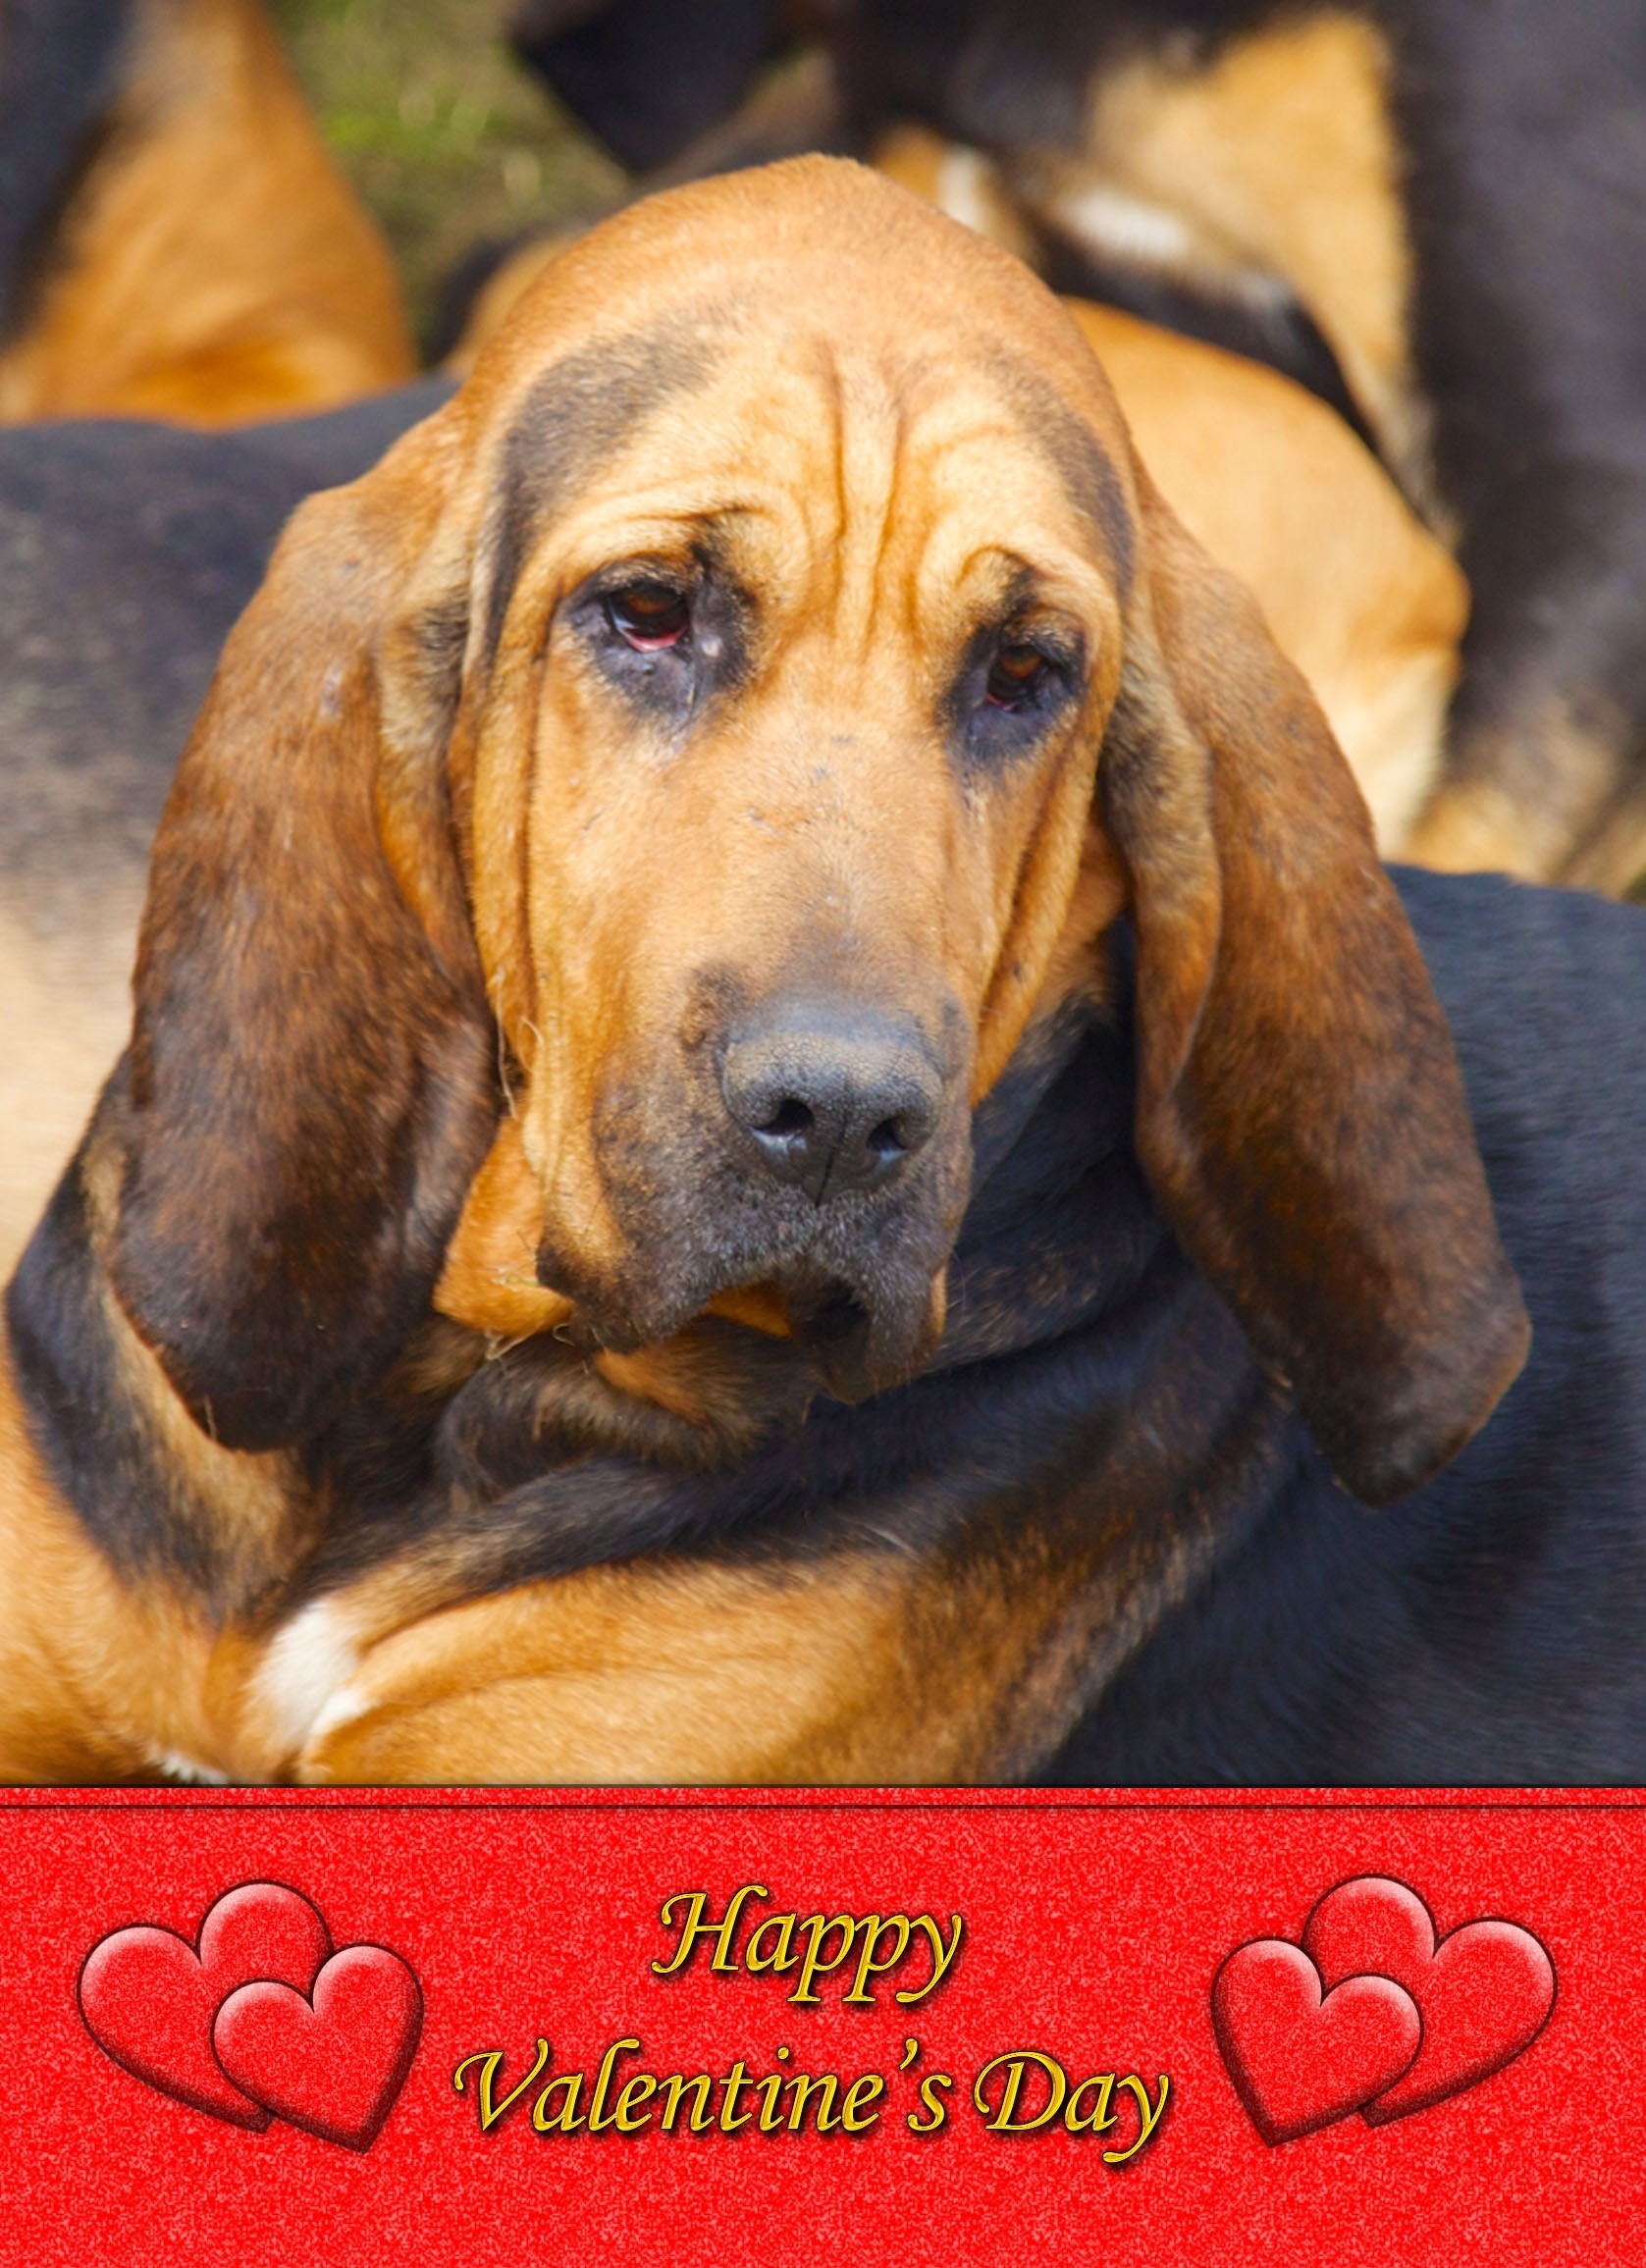 Bloodhound Valentine's Day Card